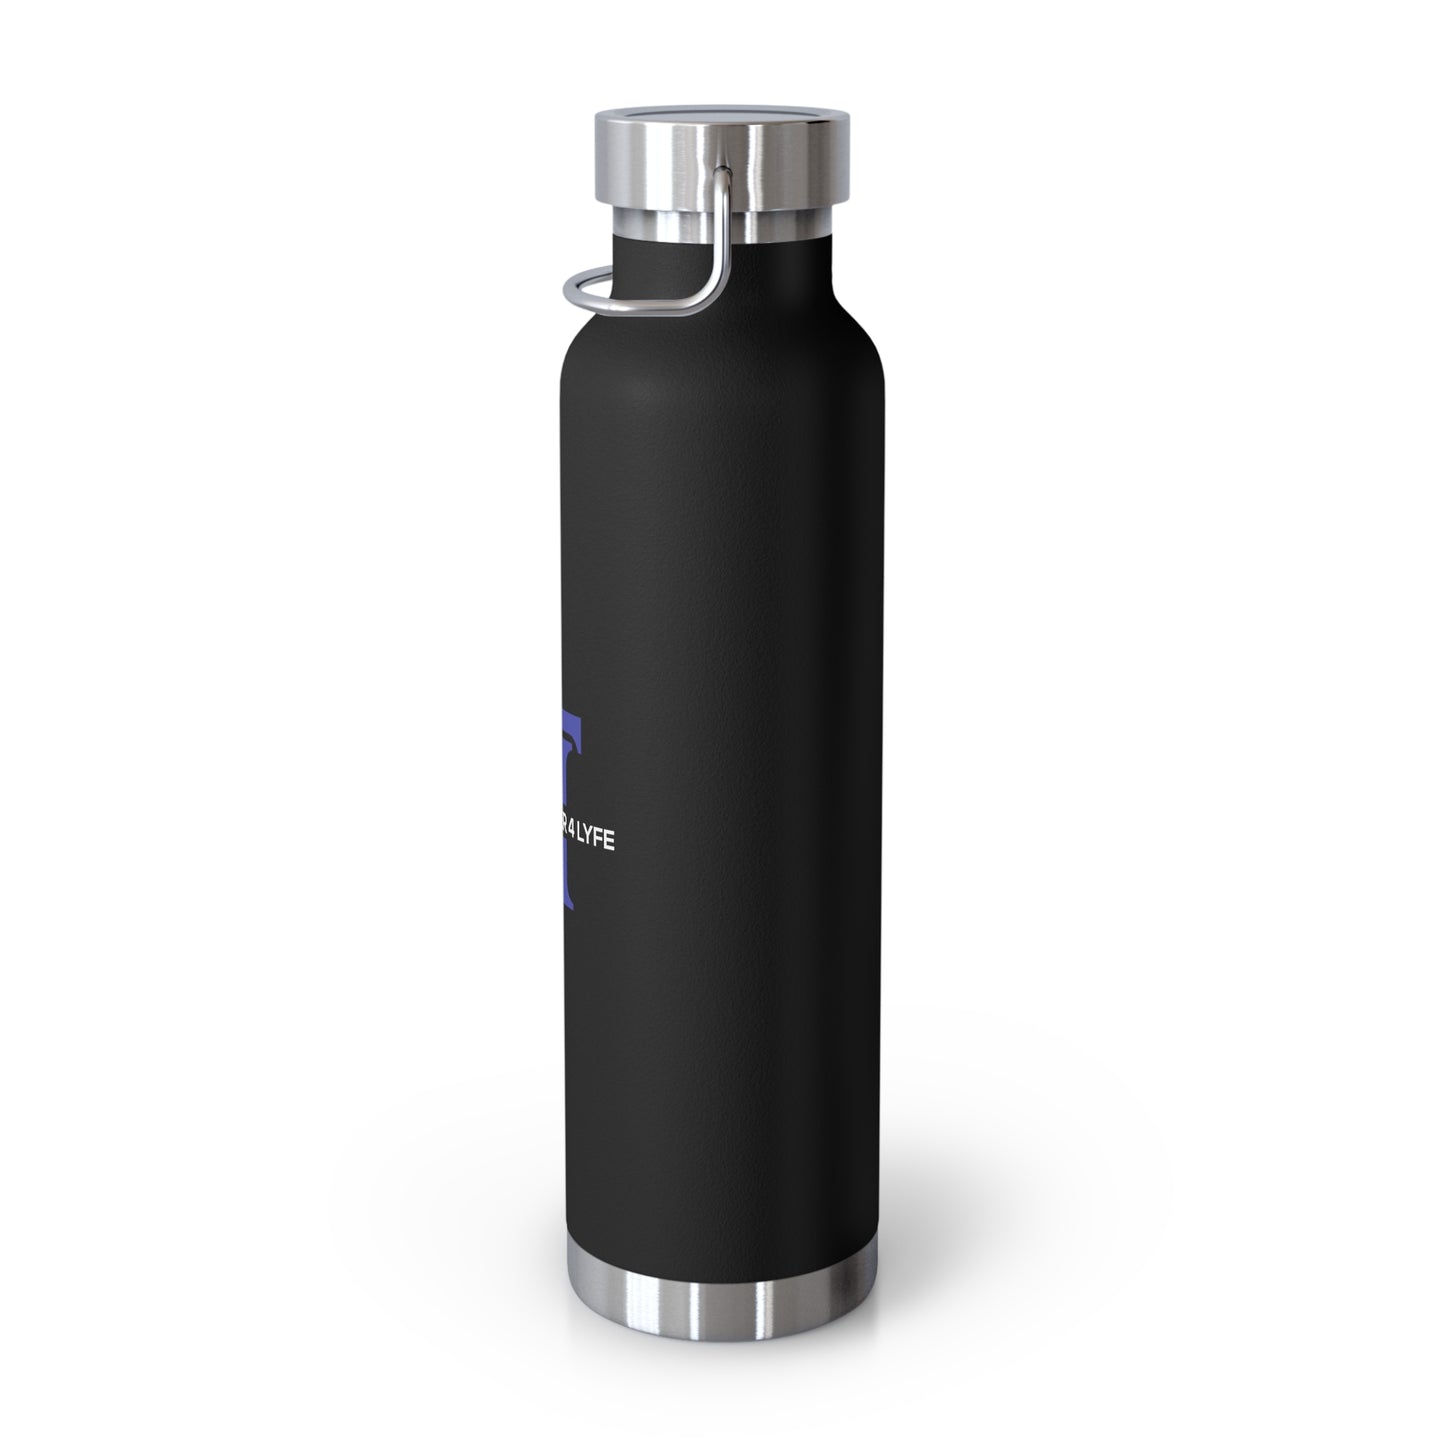 True Hustler 4 Lyfe Copper-Core Vacuum Insulated Bottle, 22oz